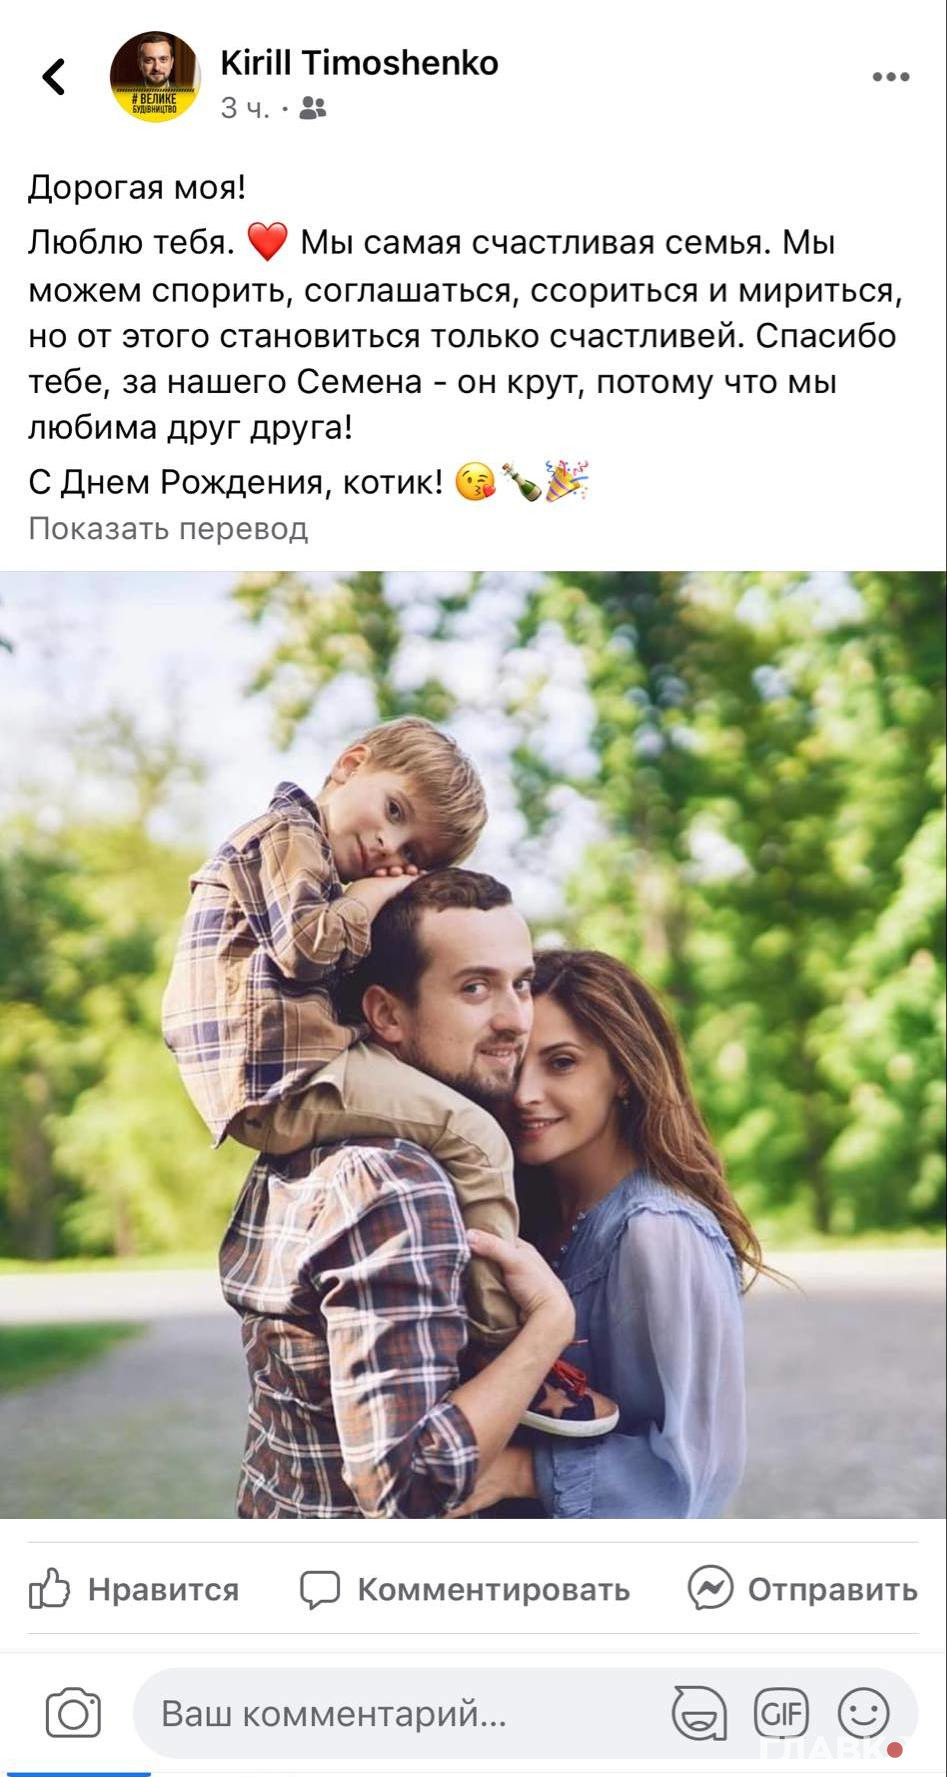 Скриншот с Facebook-страницы Кирилла Тимошенко